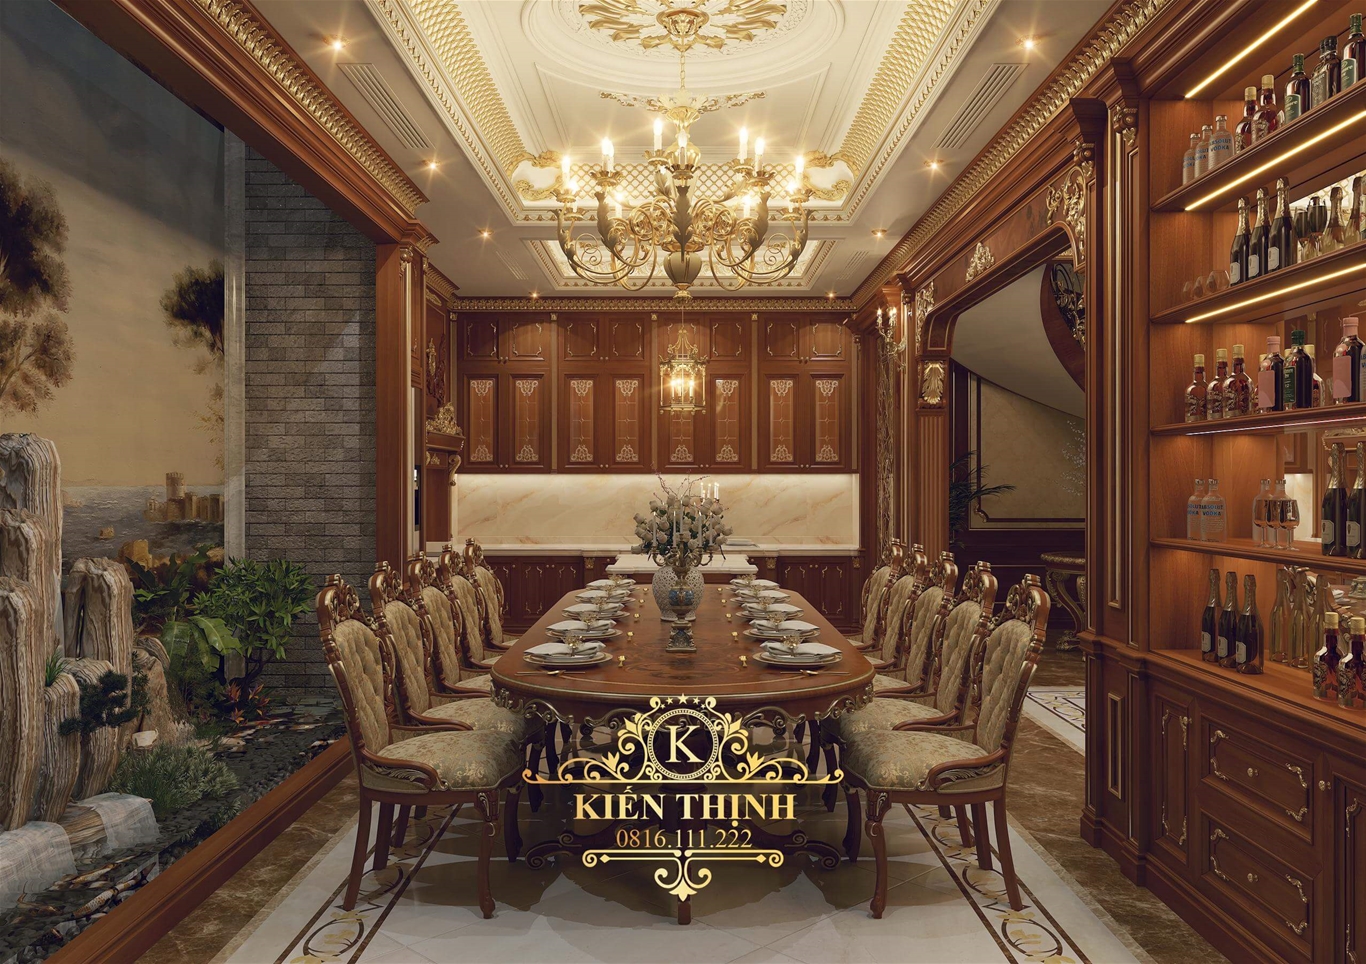 Thiết kế nội thất tân cổ điển phù hợp cho biệt thự 4 tầng tân cổ điển tại TP Hồ Chí Minh